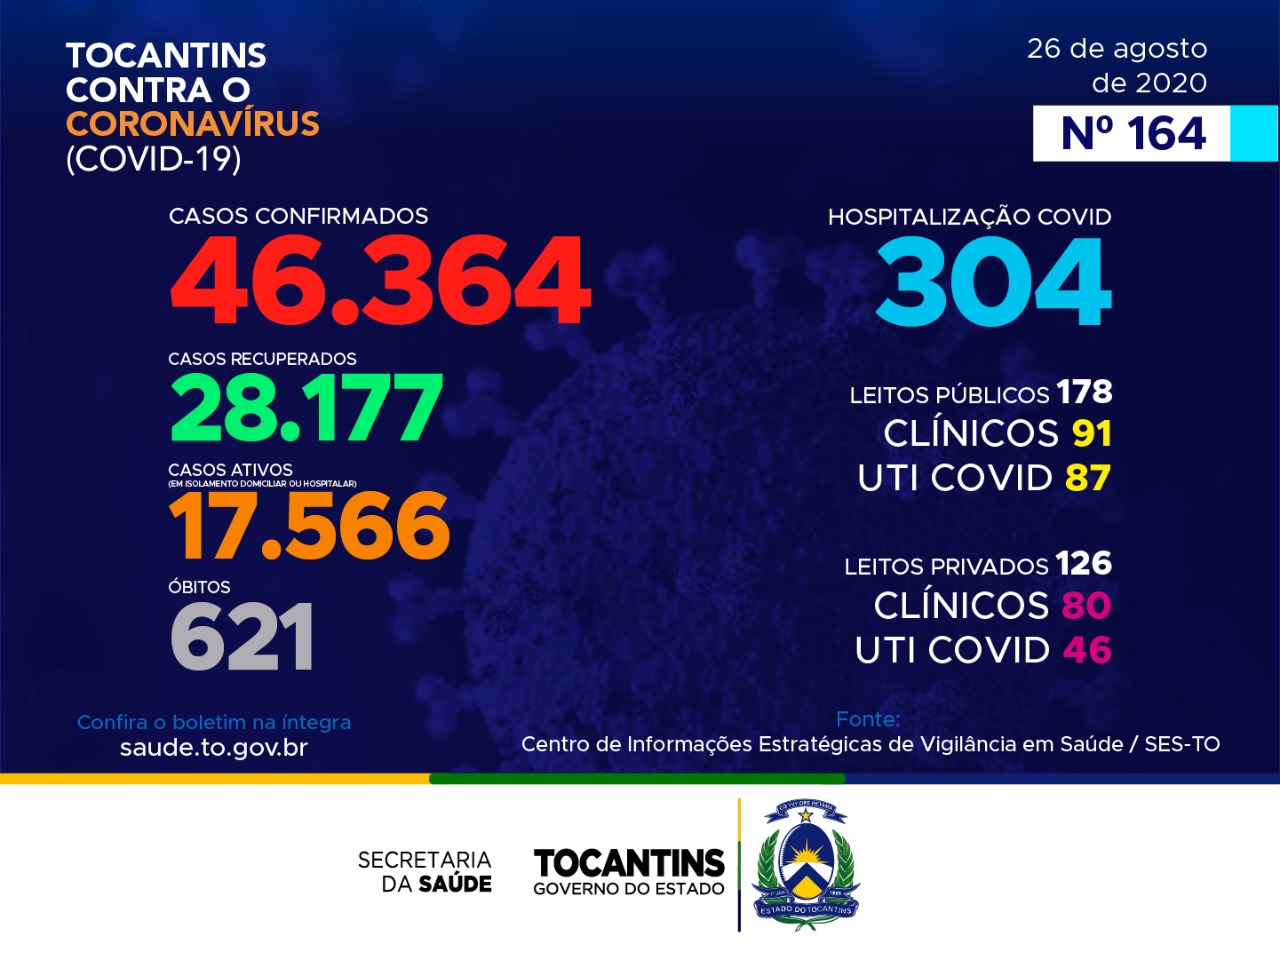 Coronavírus: Tocantins contabiliza 982 casos hoje, mais de 40% estão entre 20 e 39 anos